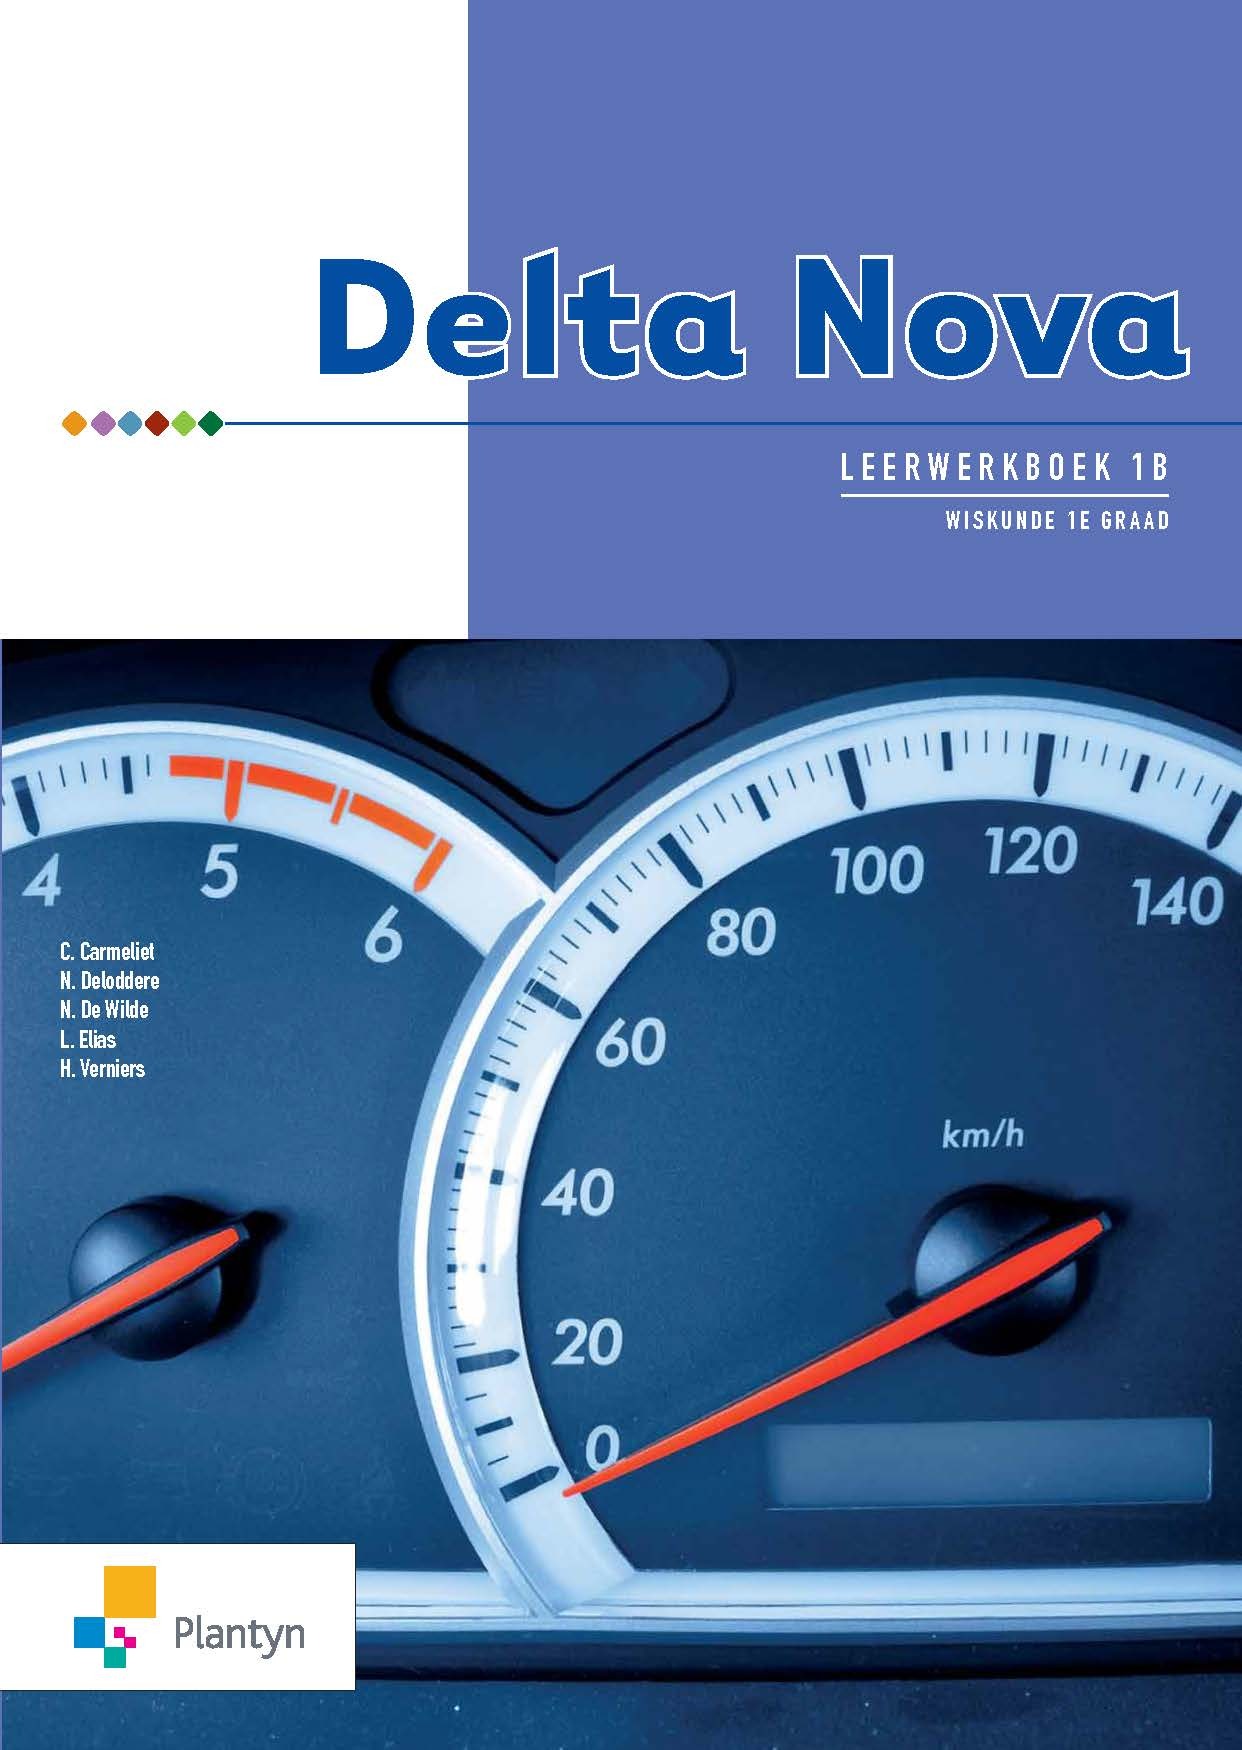 Delta Nova Leerwerkboek 1B (2015)